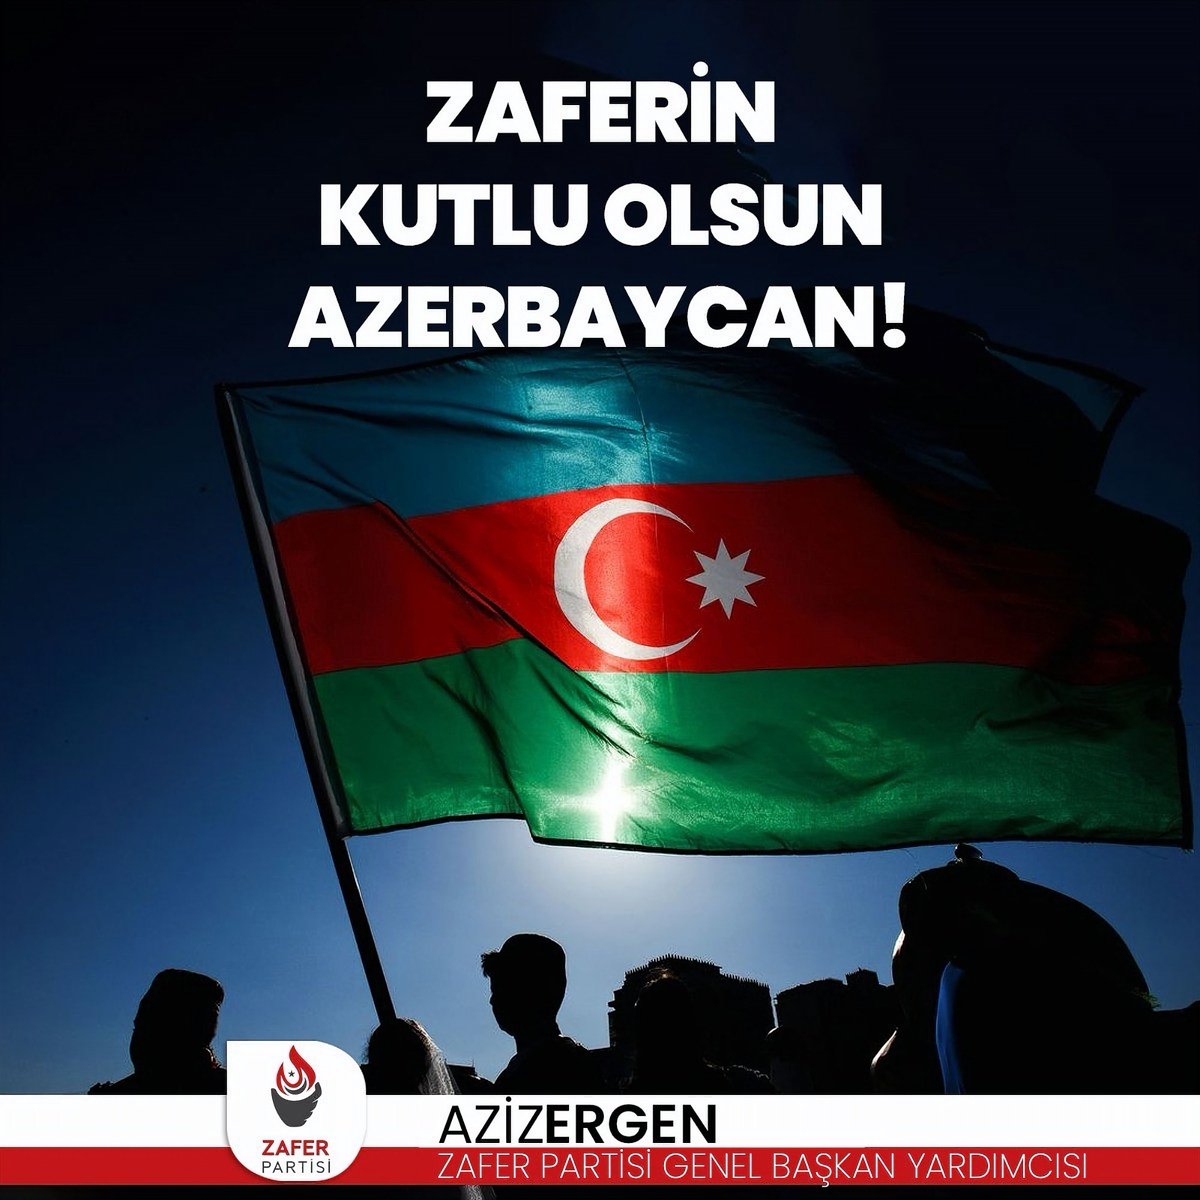 Onlarca yıldır işgal altında kalan Karabağ’ın , Türkiye ve Azerbaycan’ın omuz omuza mücadelesiyle işgalden kurtuluşu olan ‘8 Kasım Azerbaycan Zafer Bayramı’ kutlu olsun.
#AzerbaycanZaferGünü
#KarabagZaferi
@zaferpartisi